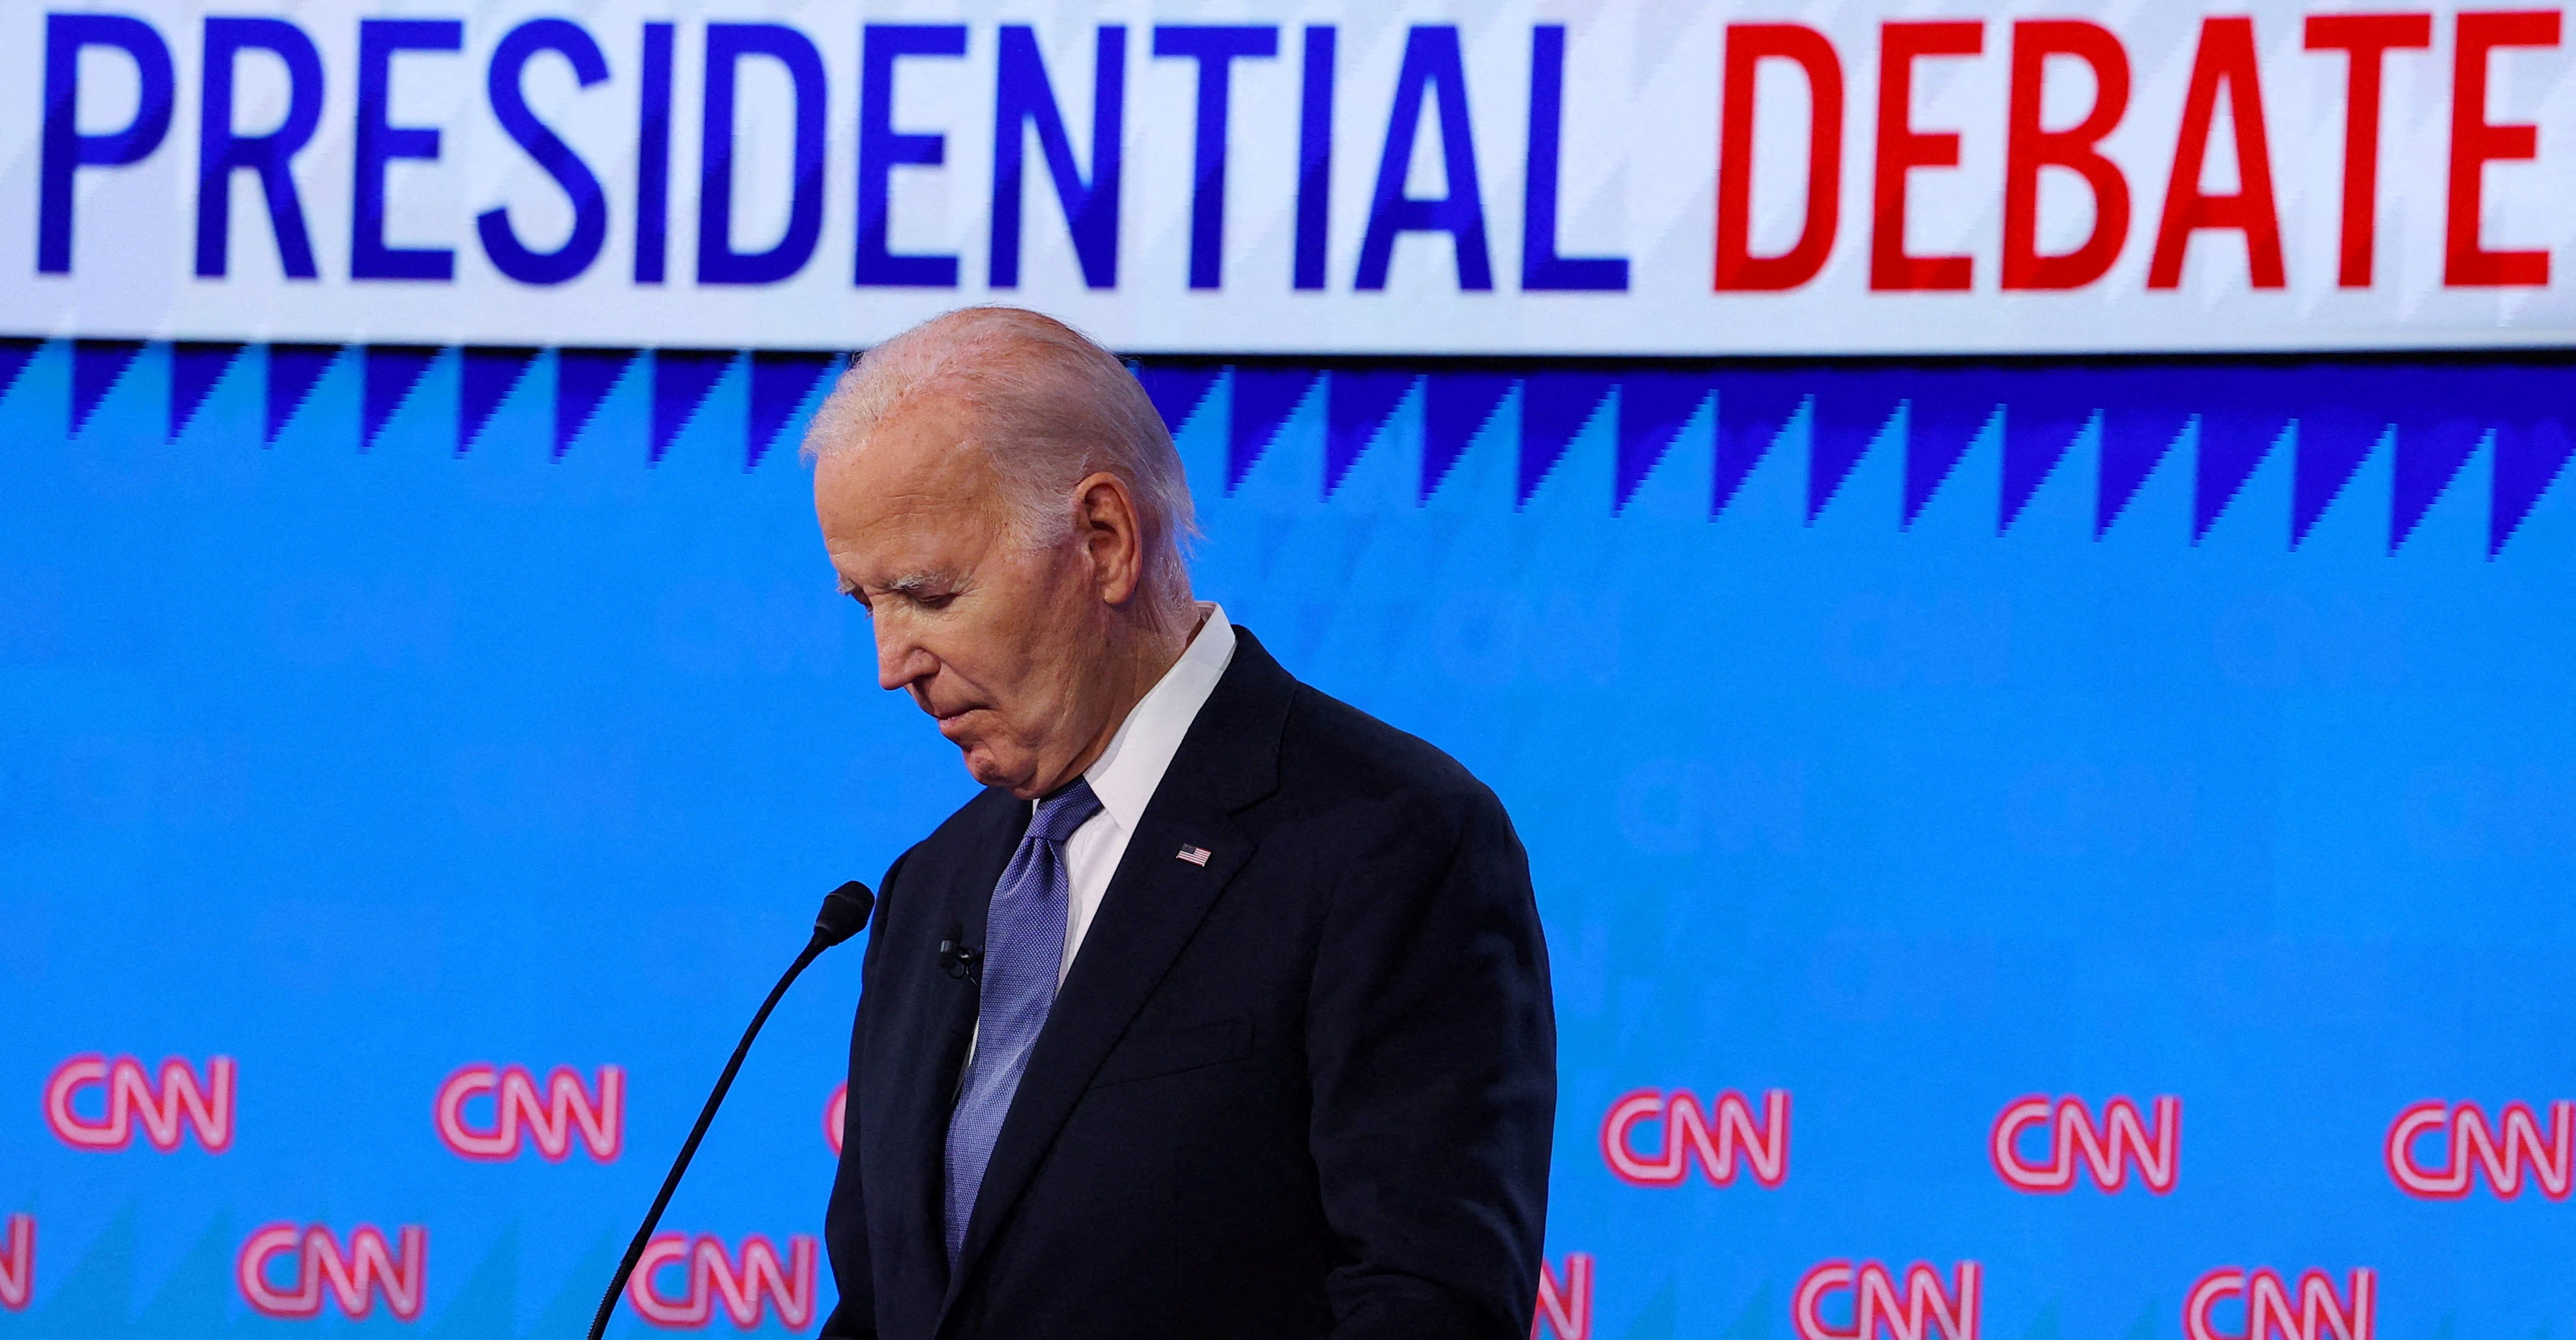 President Joe Biden listens as his opponent, Donald Trump, speaks during Thursday’s presidential debate